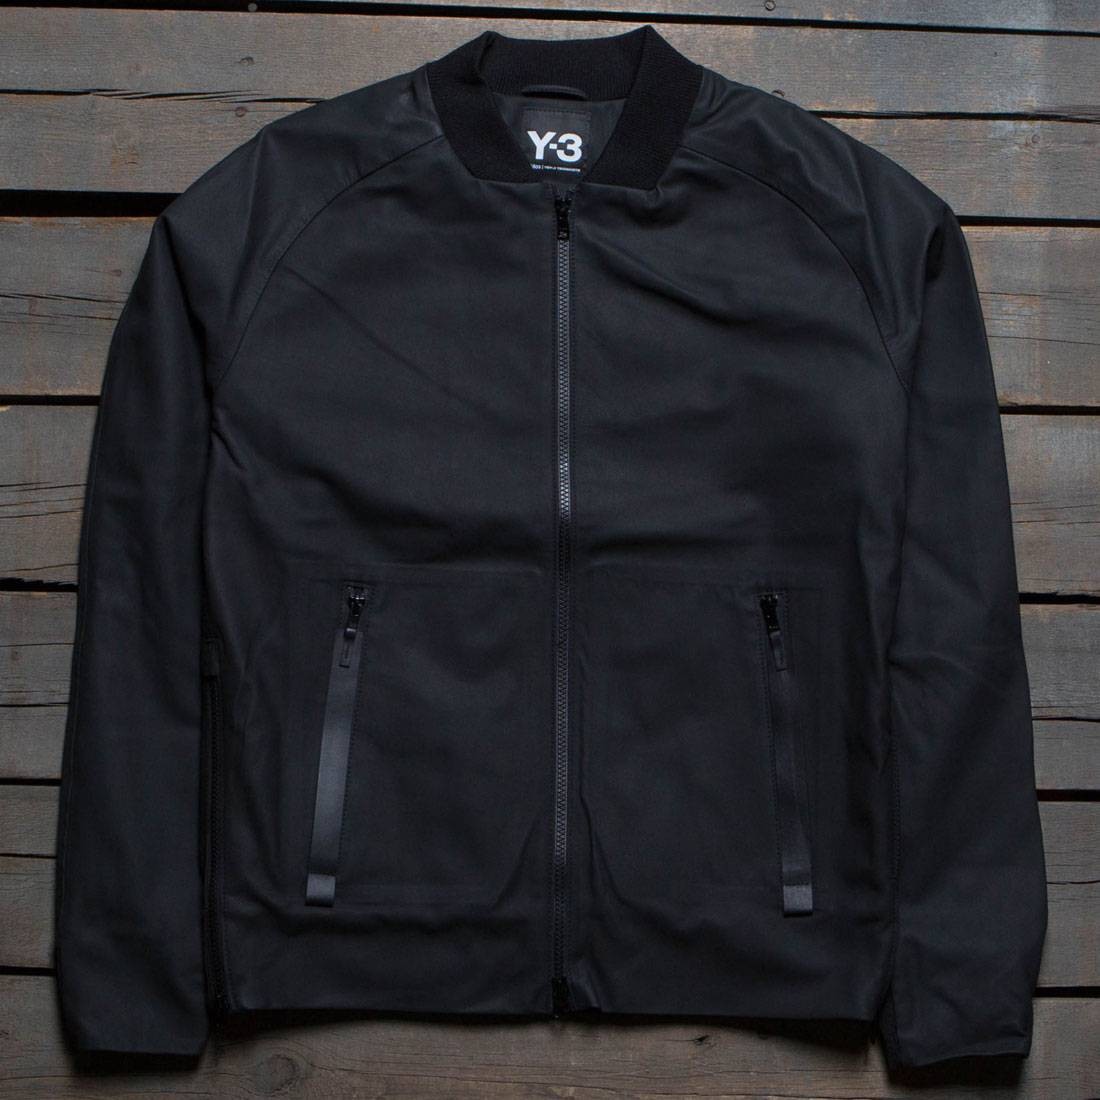 y3 jacket black